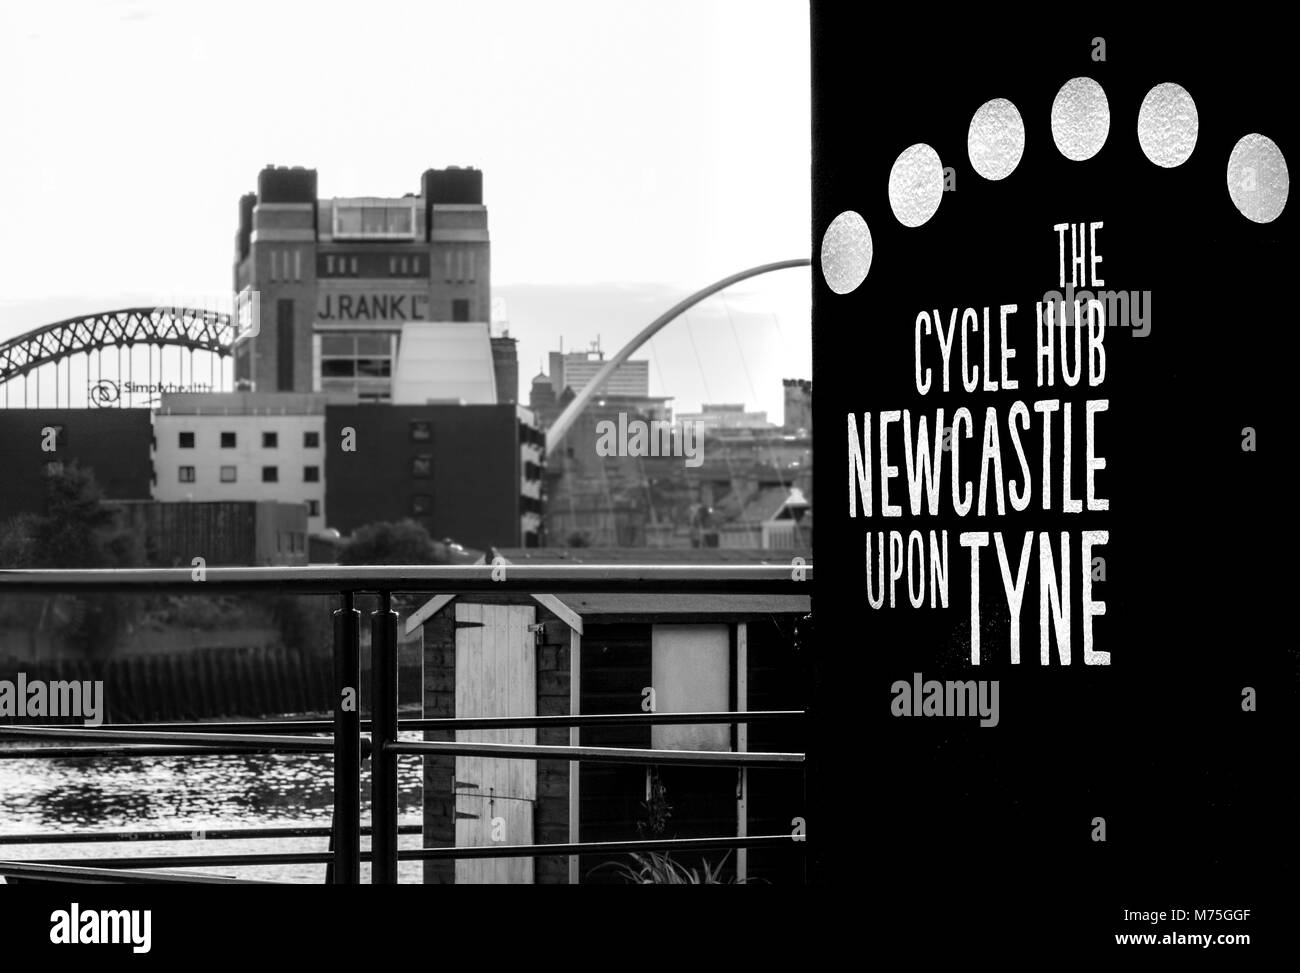 Der Zyklus Hub in Newcastle - Eine lizenzierte cafe bar mit Radfahren Thema Stockfoto